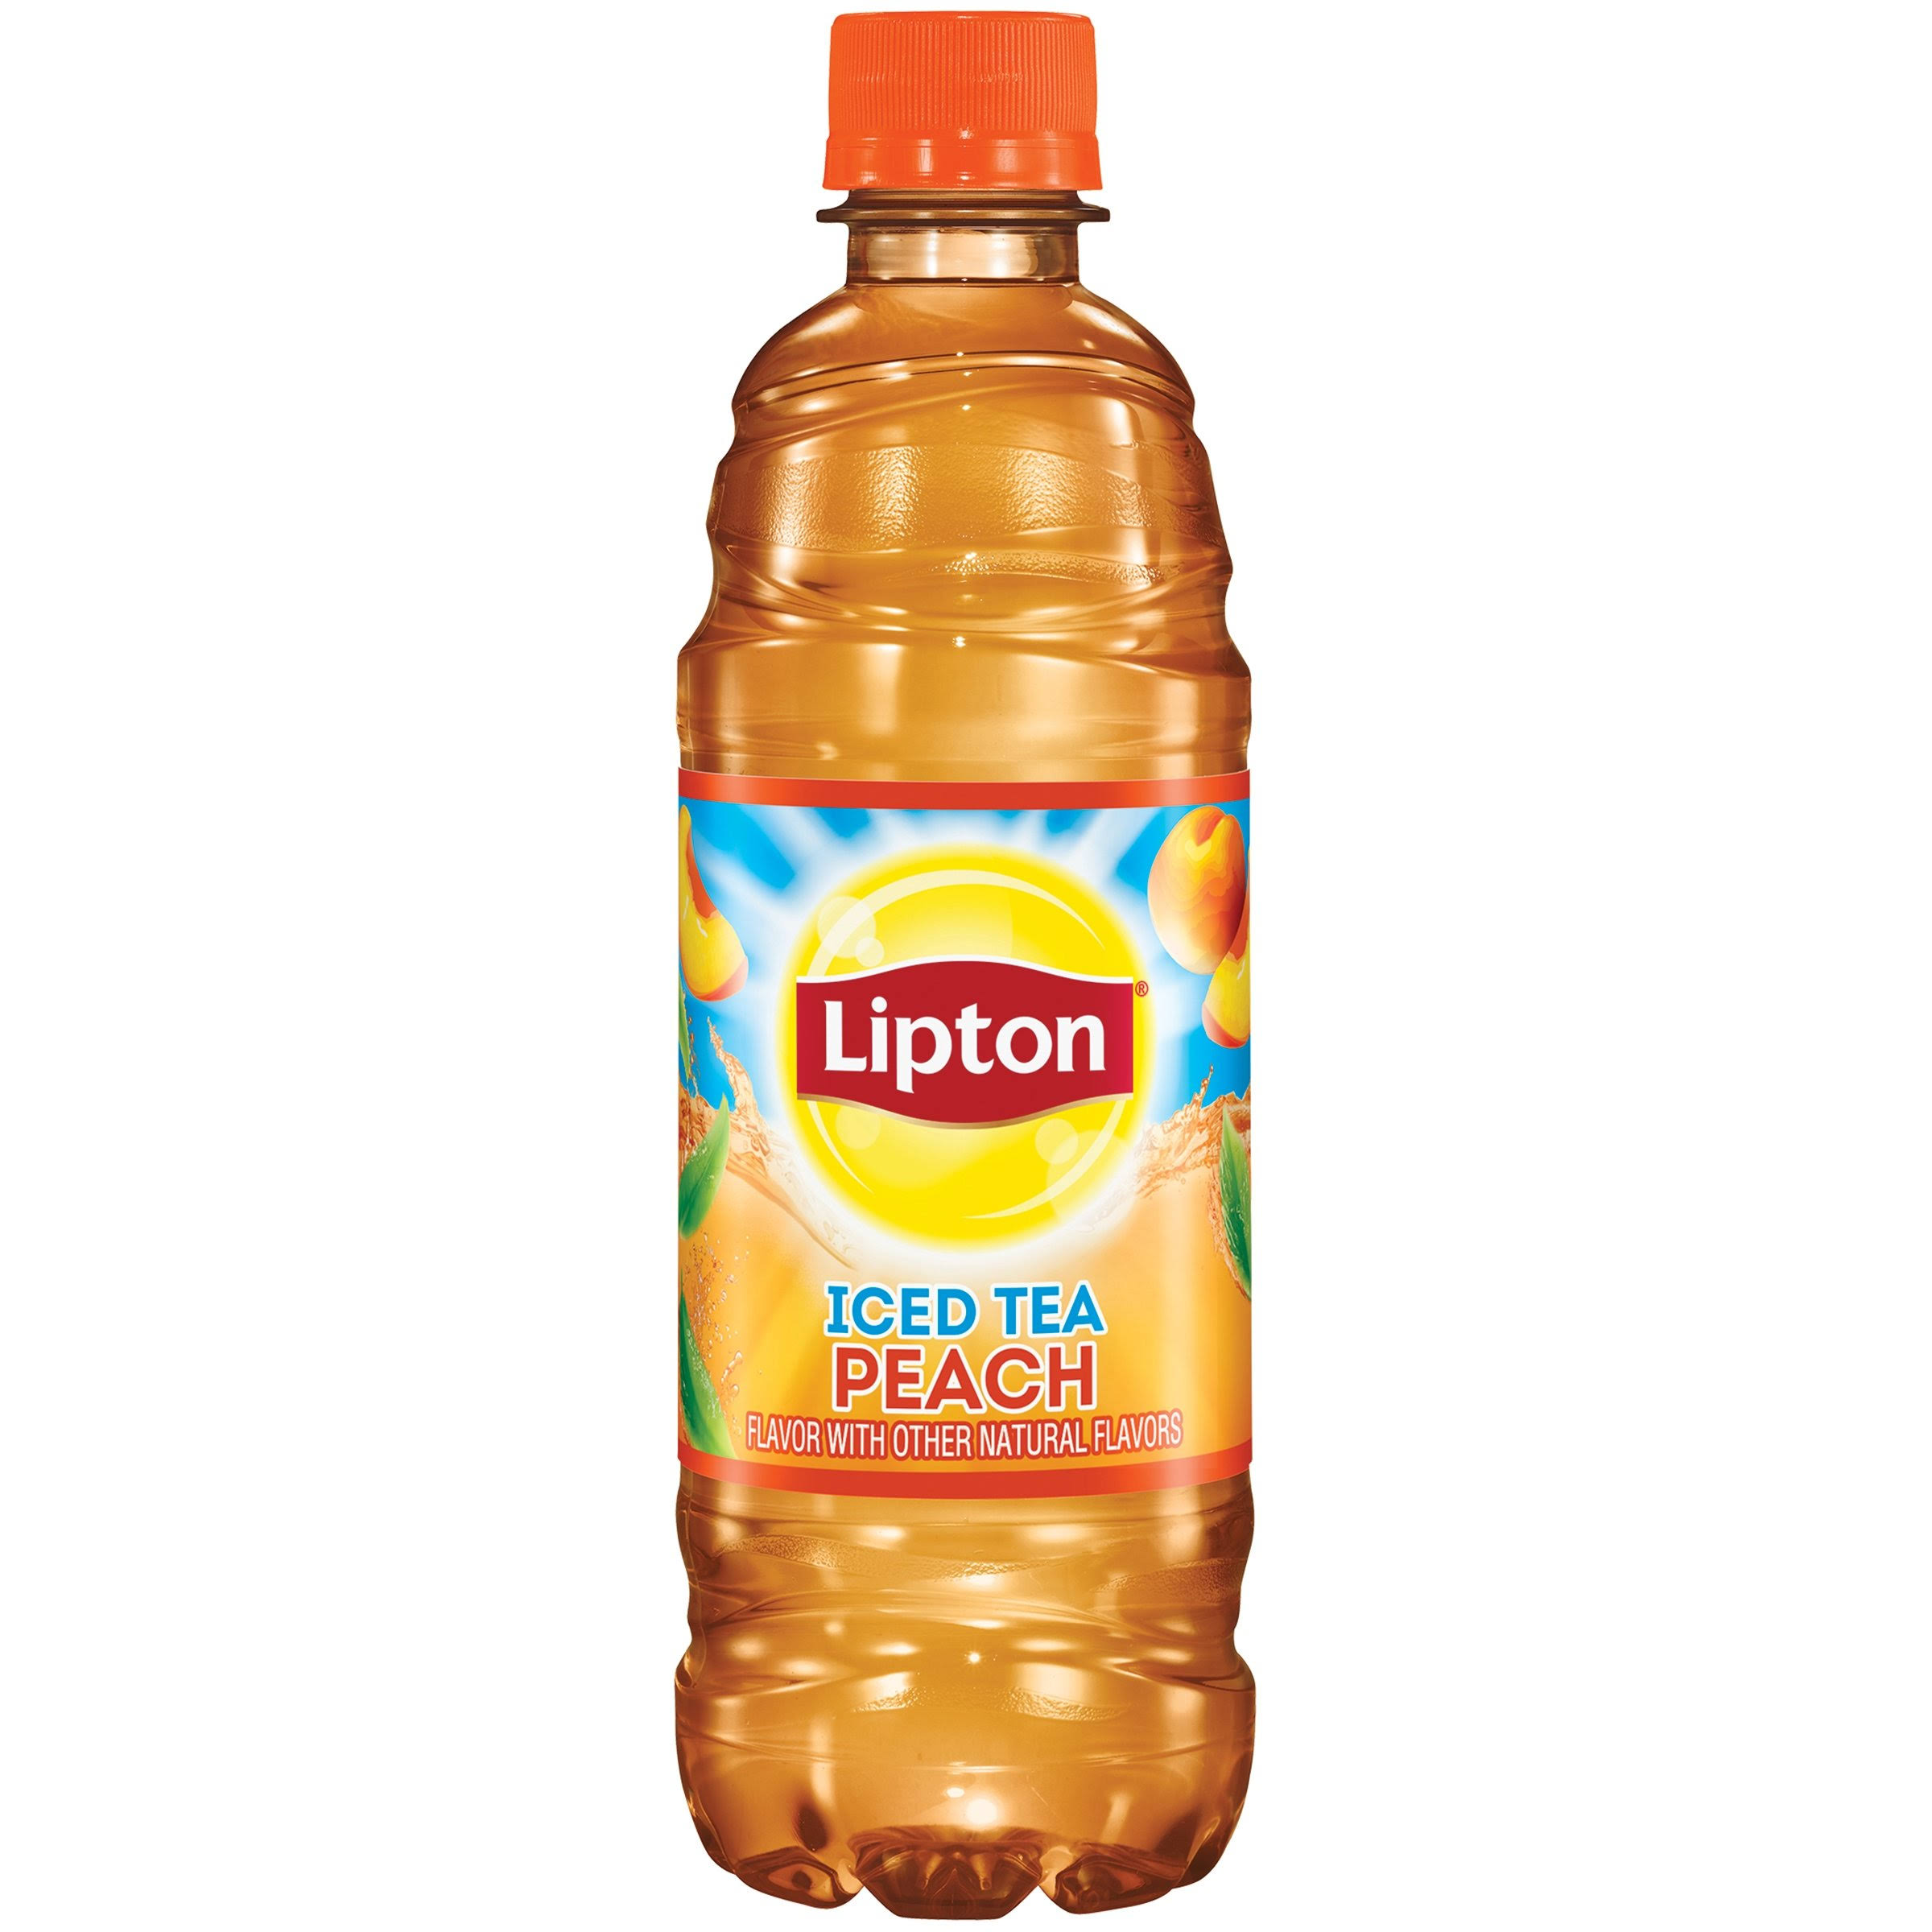 Lipton Iced Tea - Peach